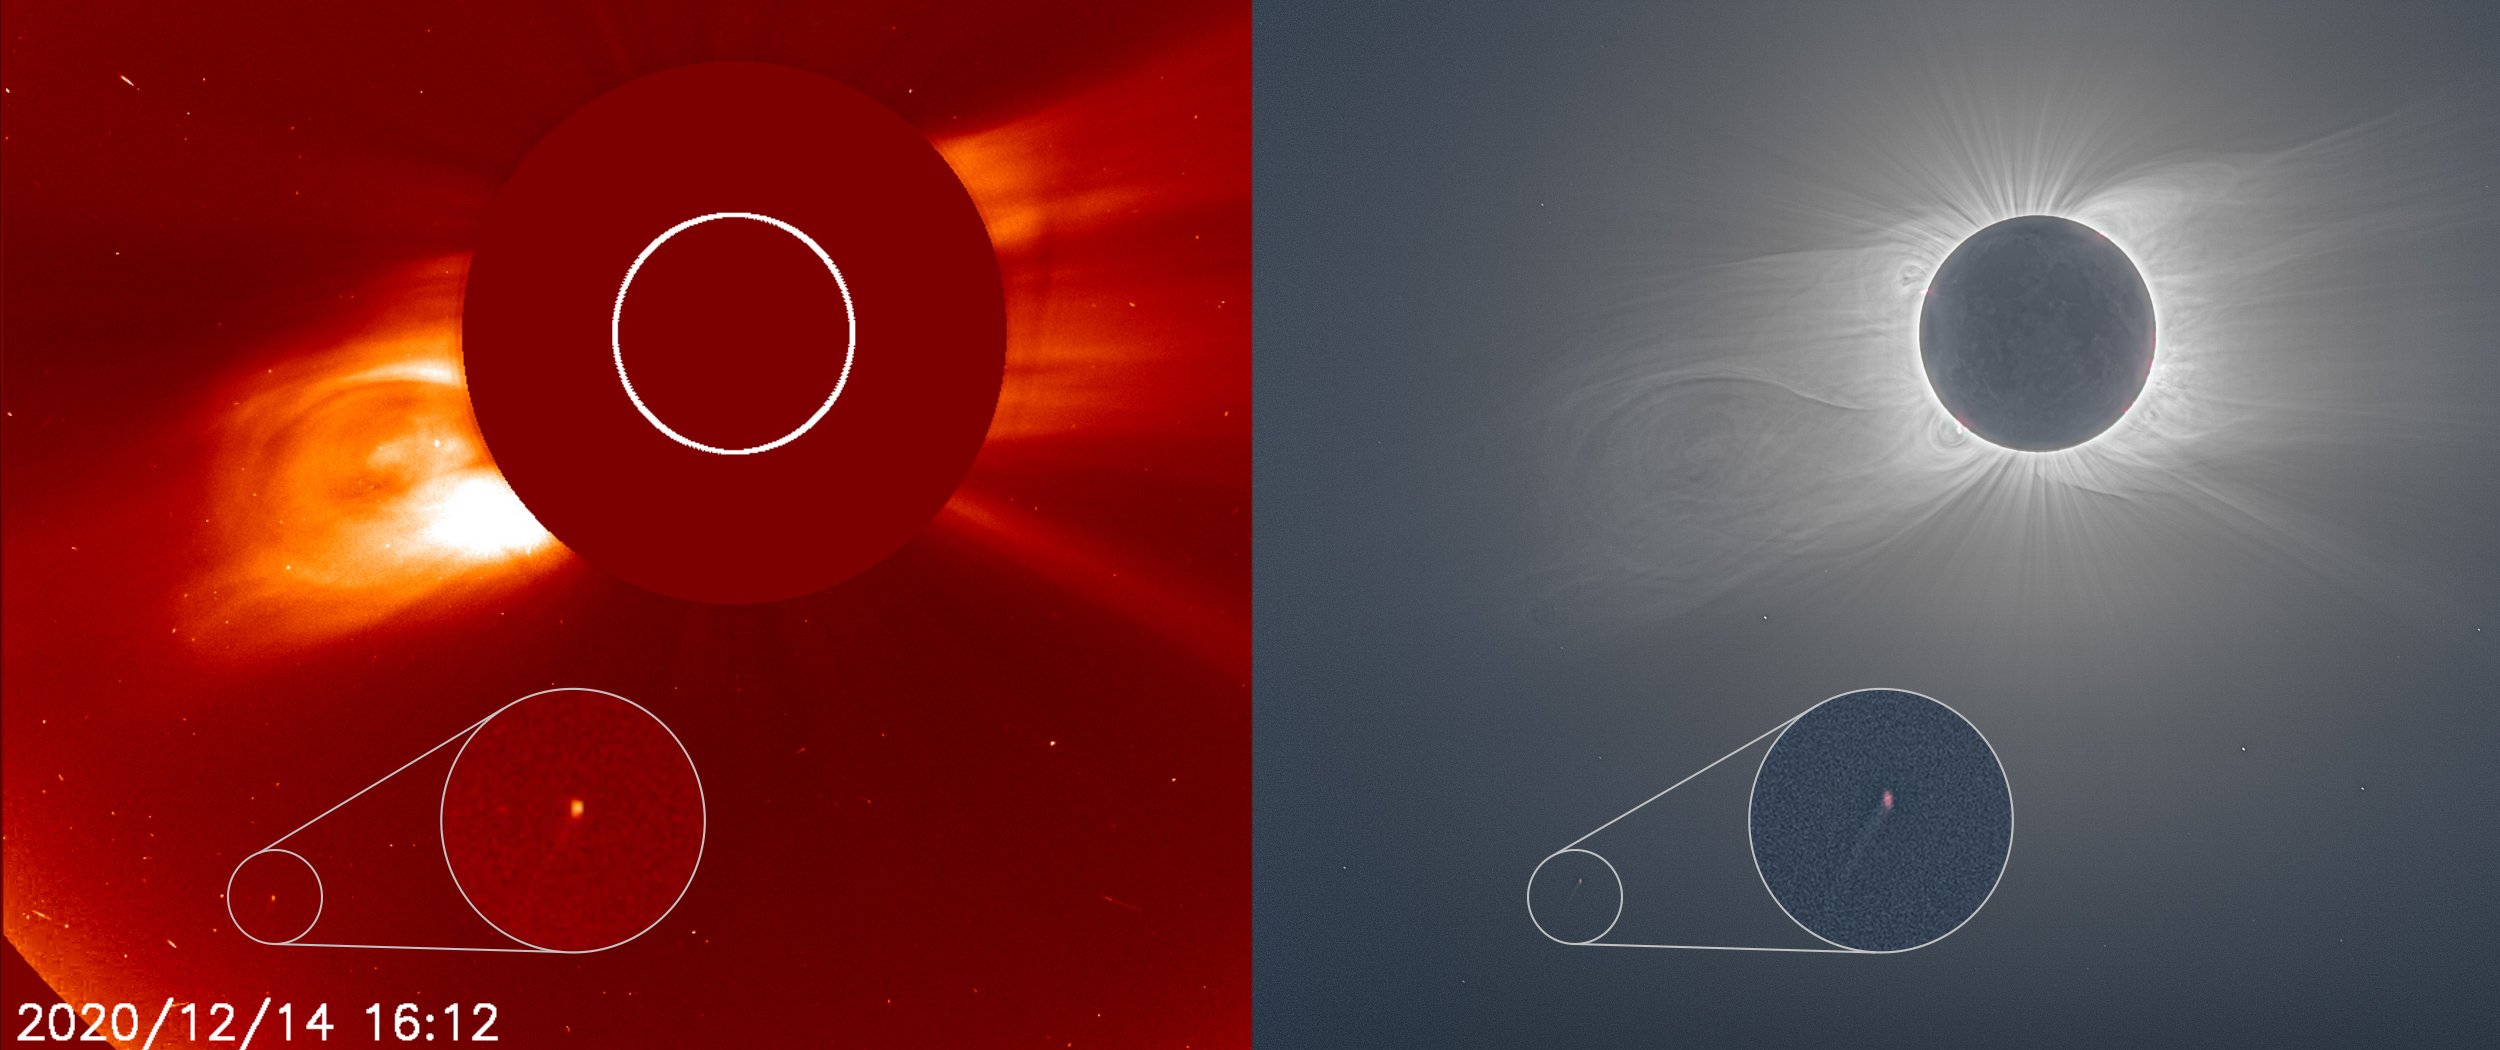 Dwa zdjęcia obok siebie przedstawiają kometę blisko Słońca. Zdjęcie po prawej stronie przedstawia koronę słoneczną świecącą jasno podczas całkowitego zaćmienia Słońca.